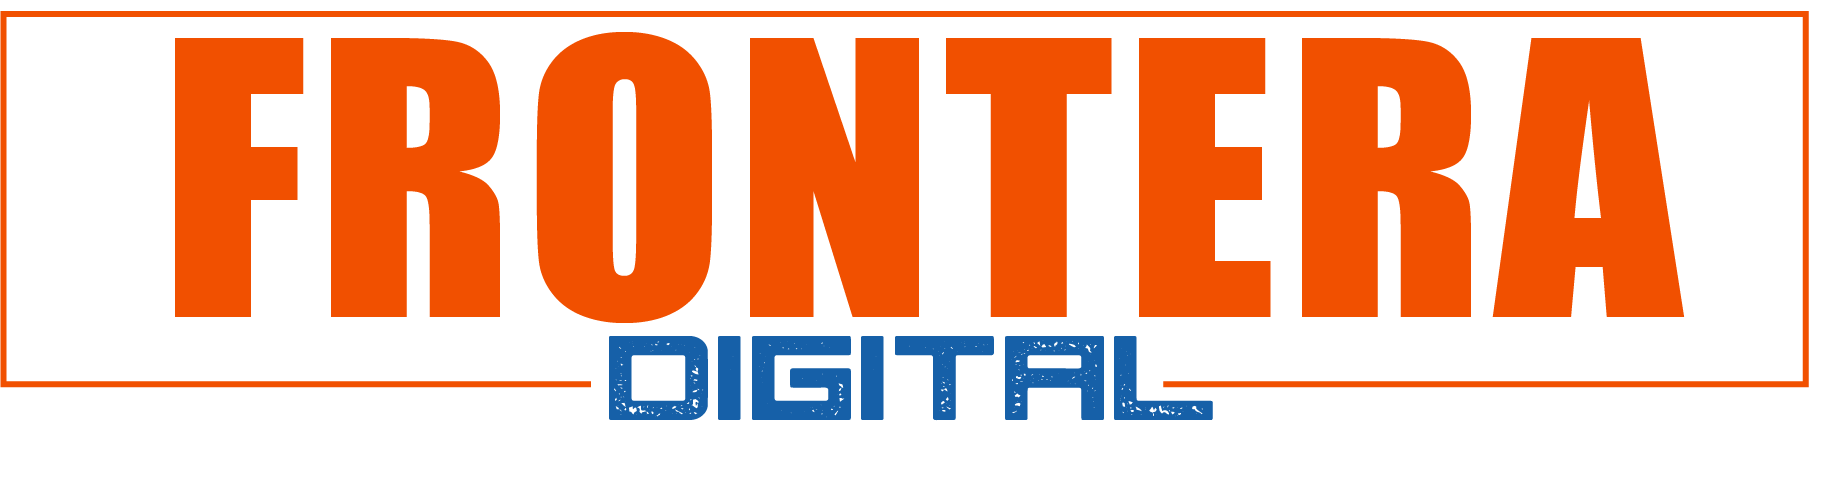 Frontera Digital, Diario Frontera